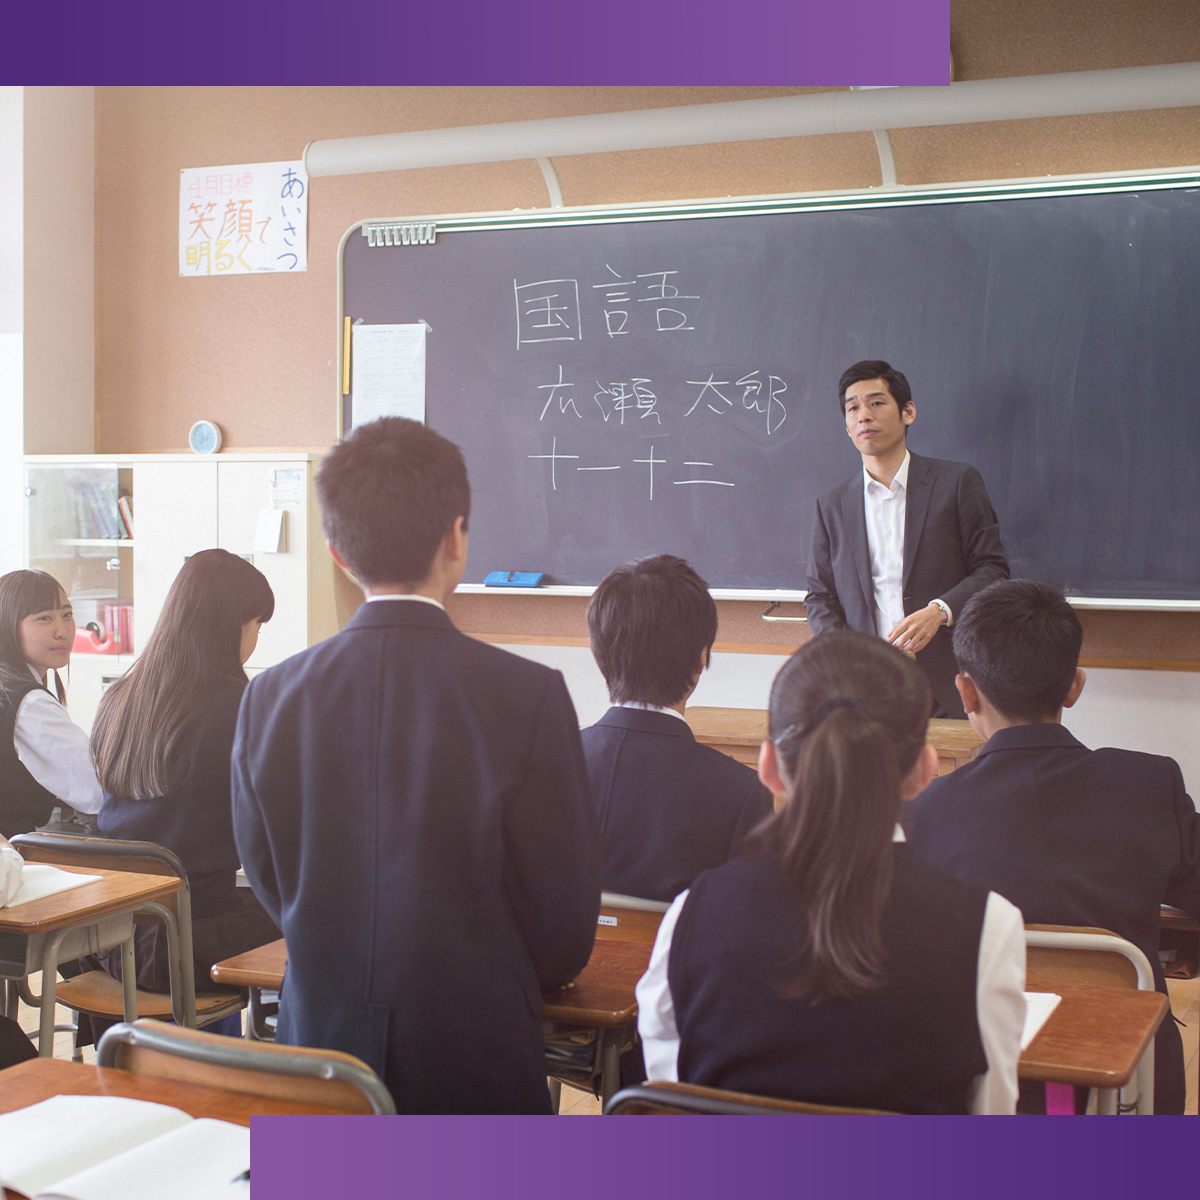 บูรณาการจัดการเรียนรู้ภาษาจีนในสถานศึกษา (Integration of Chinese Learning Management for Schools)